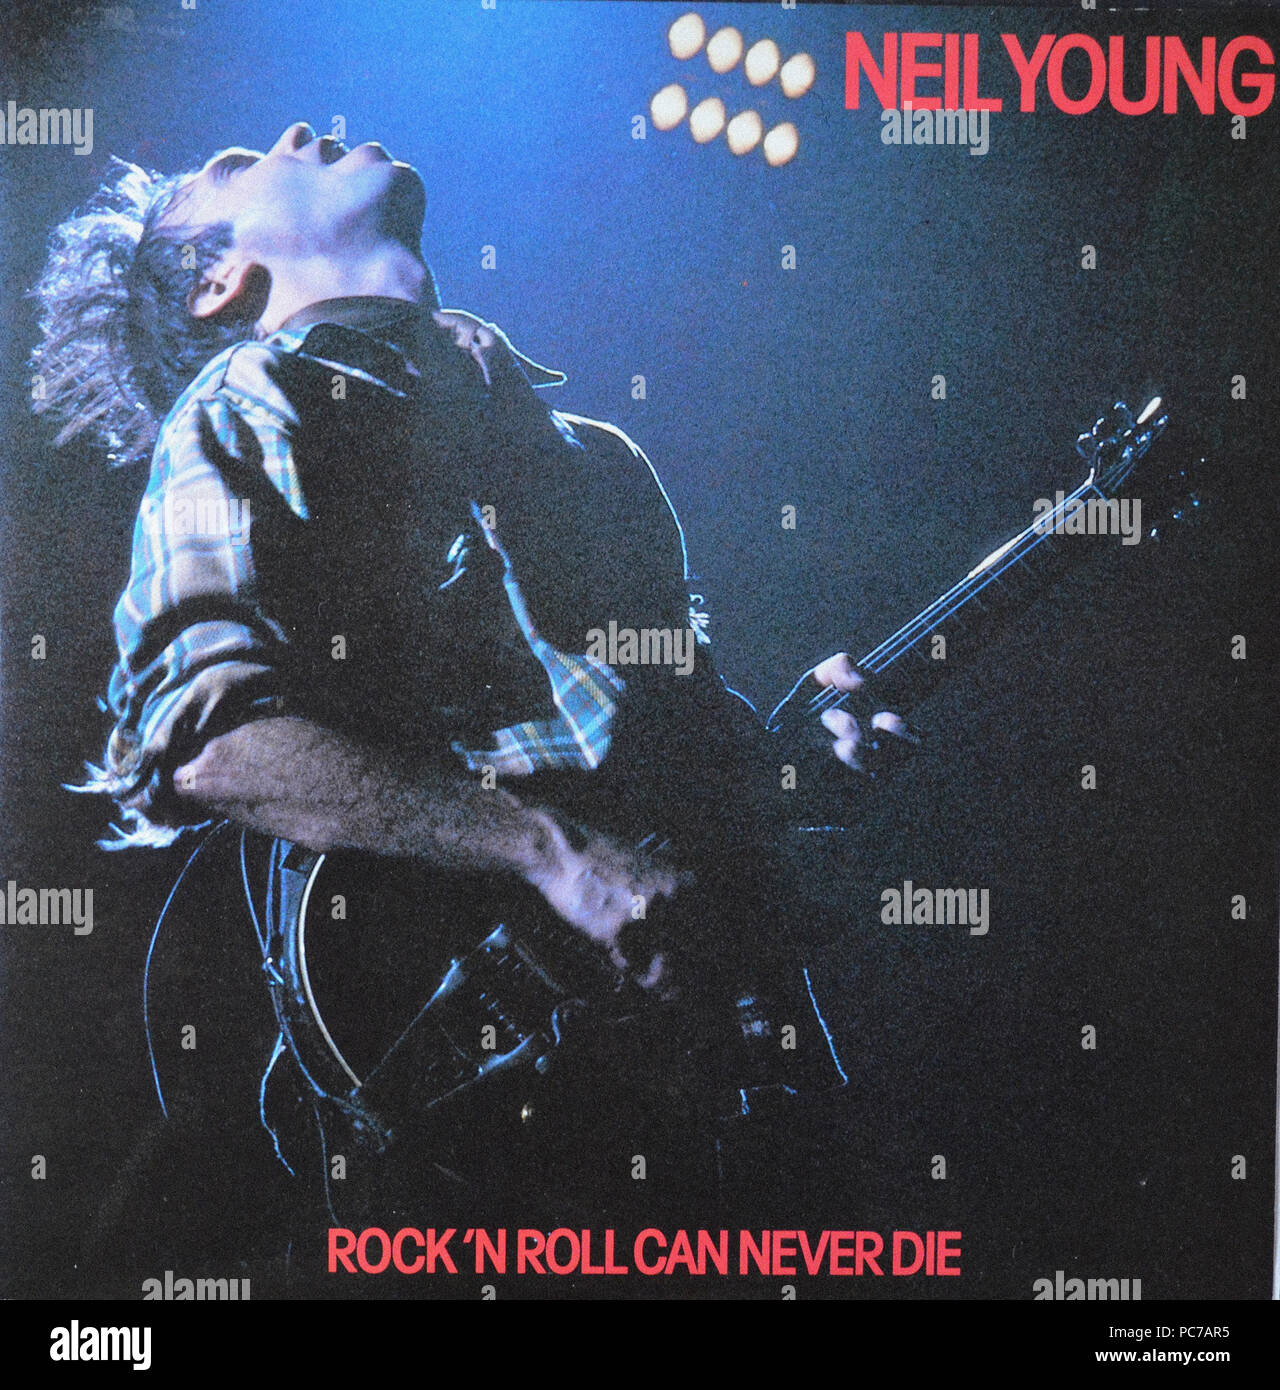 Neil Young - Rock'n Roll ne peut jamais mourir - couverture de l'album vinyle vintage Banque D'Images